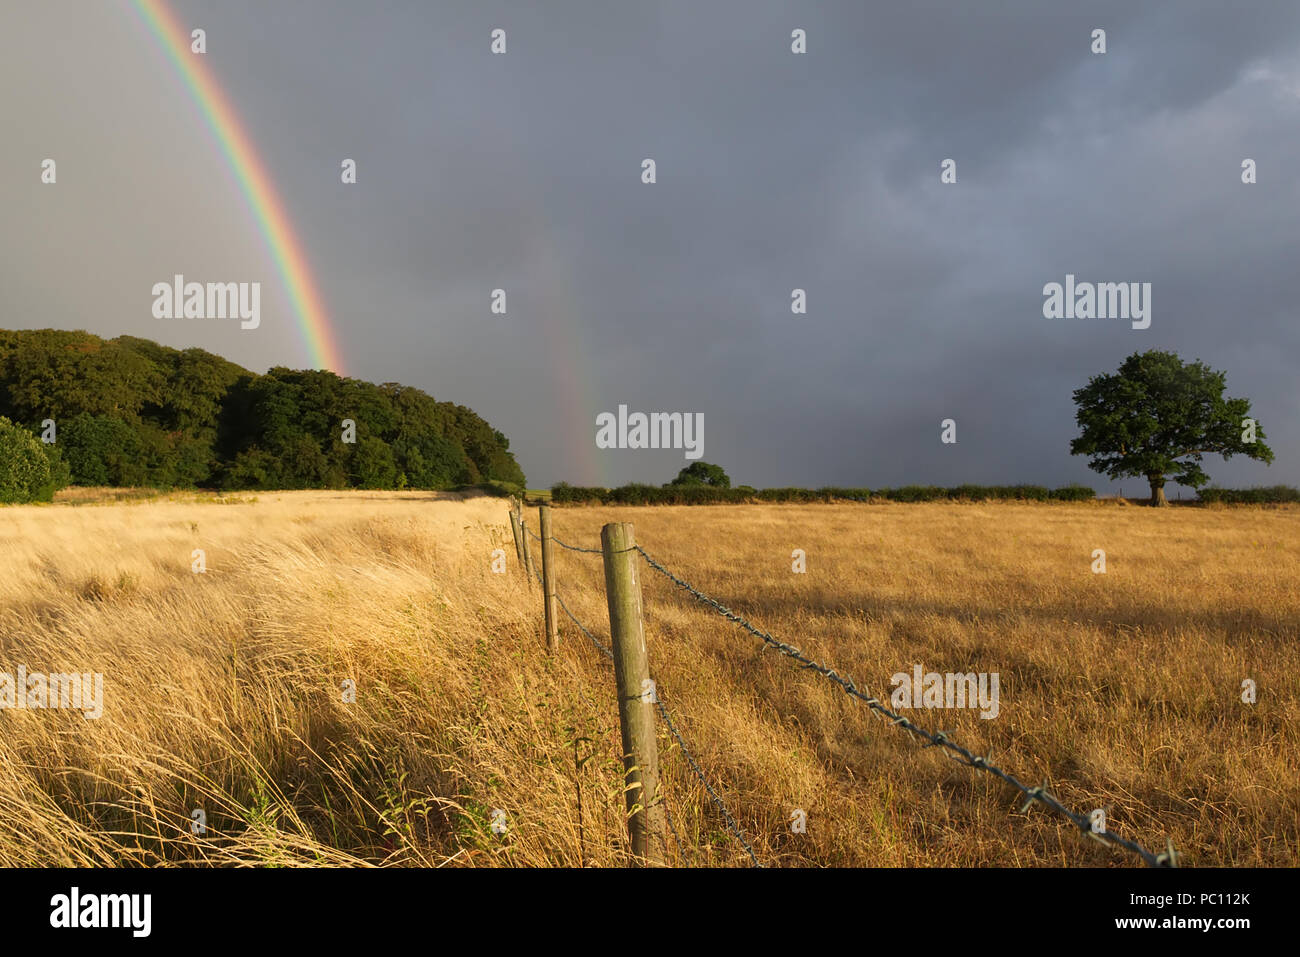 Doppio arcobaleno contro una dark sky atmosferica dopo una tempesta di pioggia a secco con campo di grano in primo piano con un recinto che conduce verso il verde di alberi in th Foto Stock